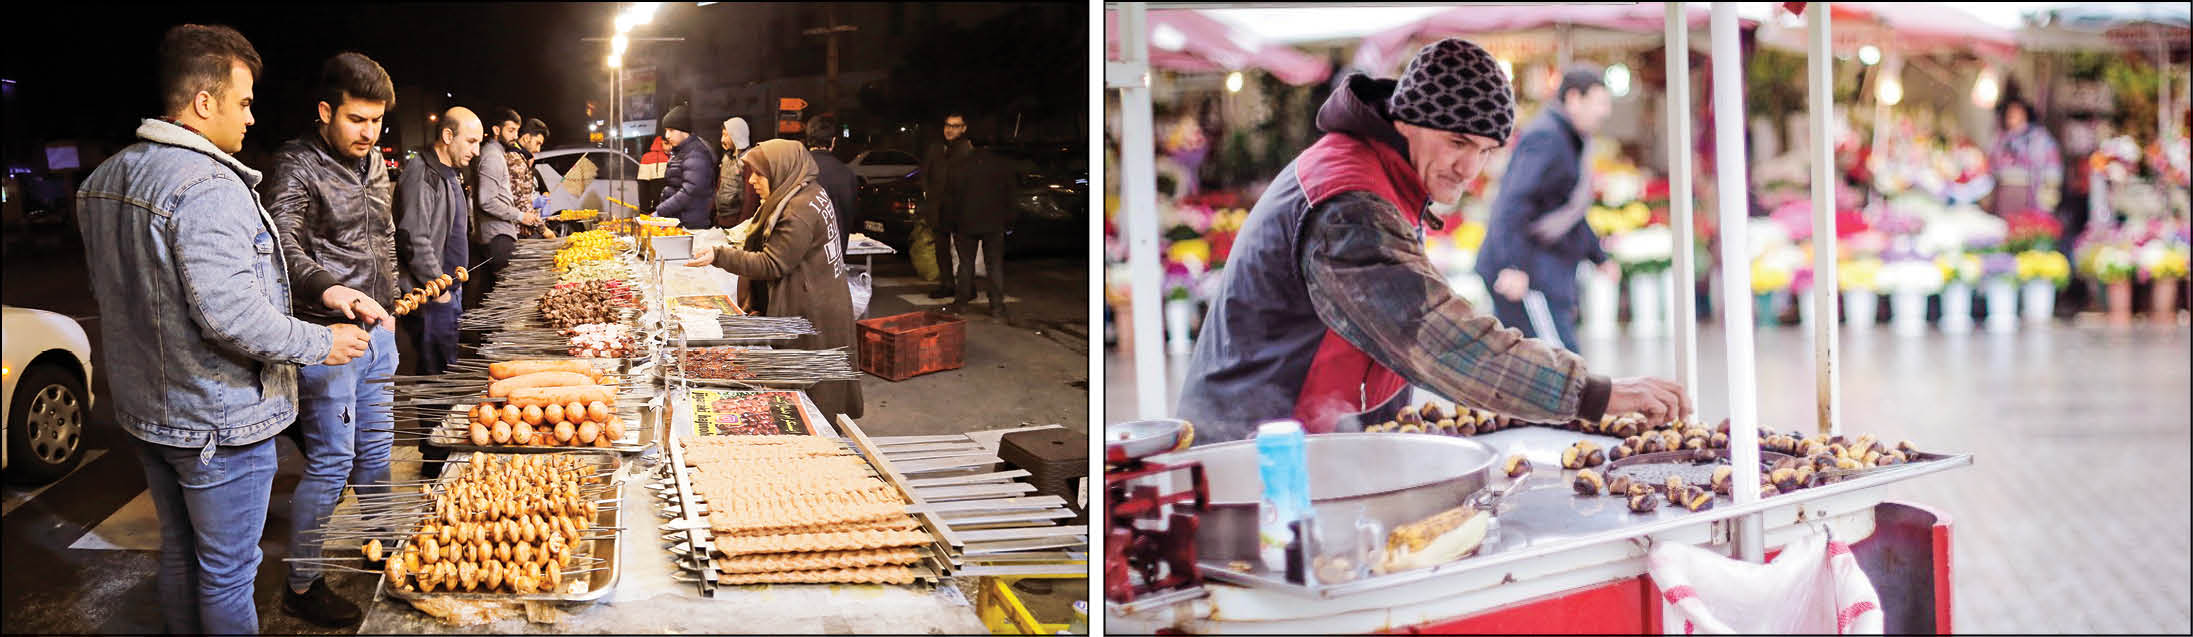 غذای خیابان؛ از تهران تا استانبول مشتری پرو پاقرص دارد